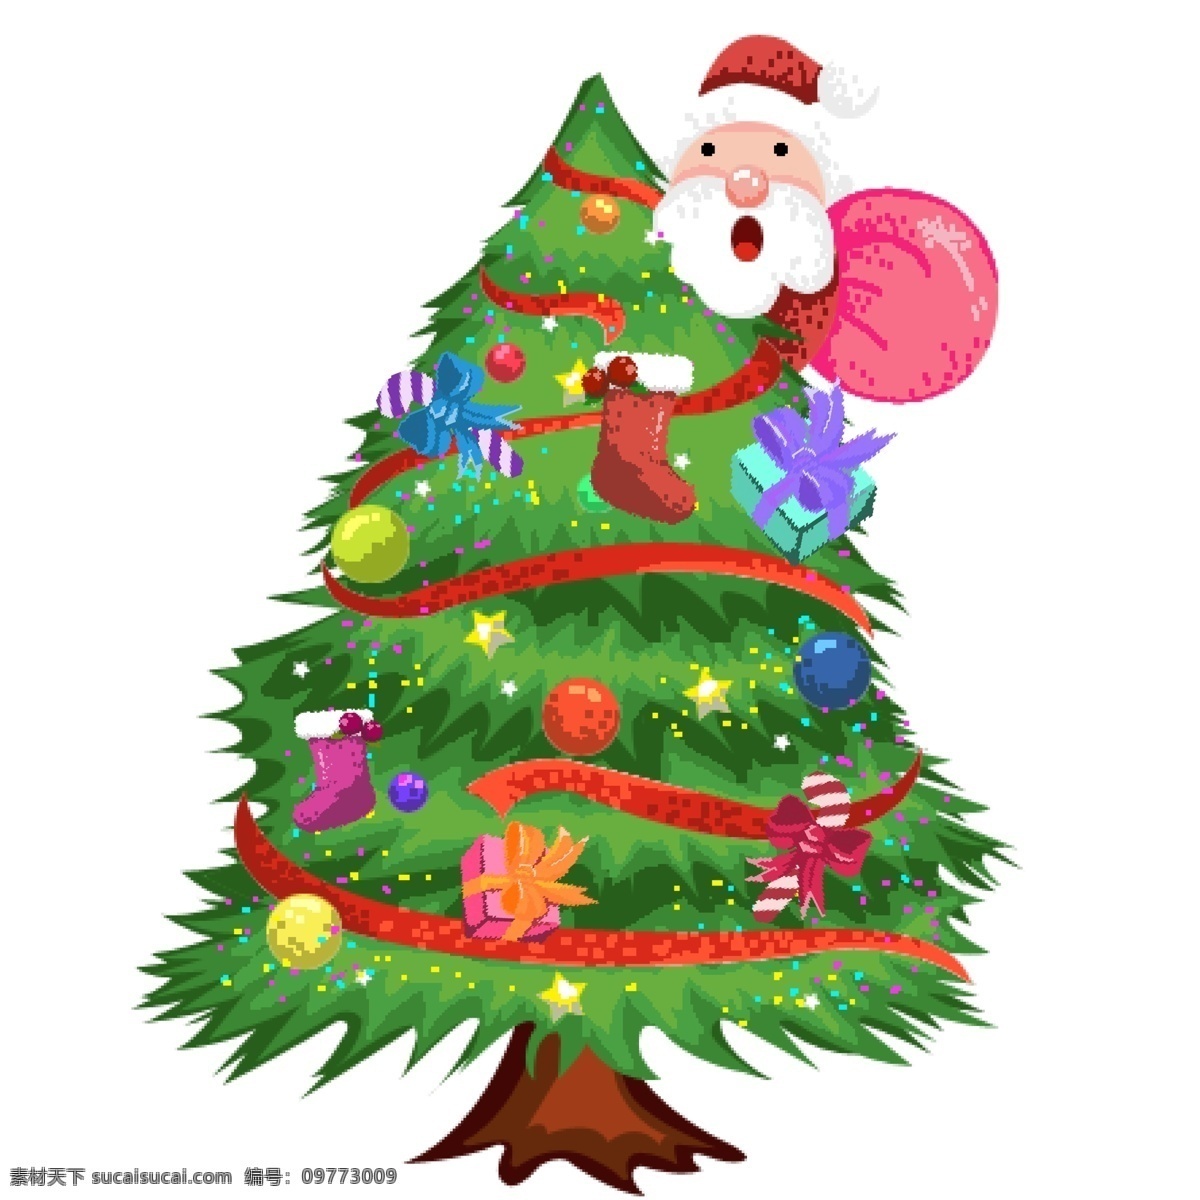 彩绘 圣诞树 圣诞老人 复古 像素 化 商用 元素 创意 节日装饰 八十年代复古 像素化设计 彩色圣诞树 节日元素